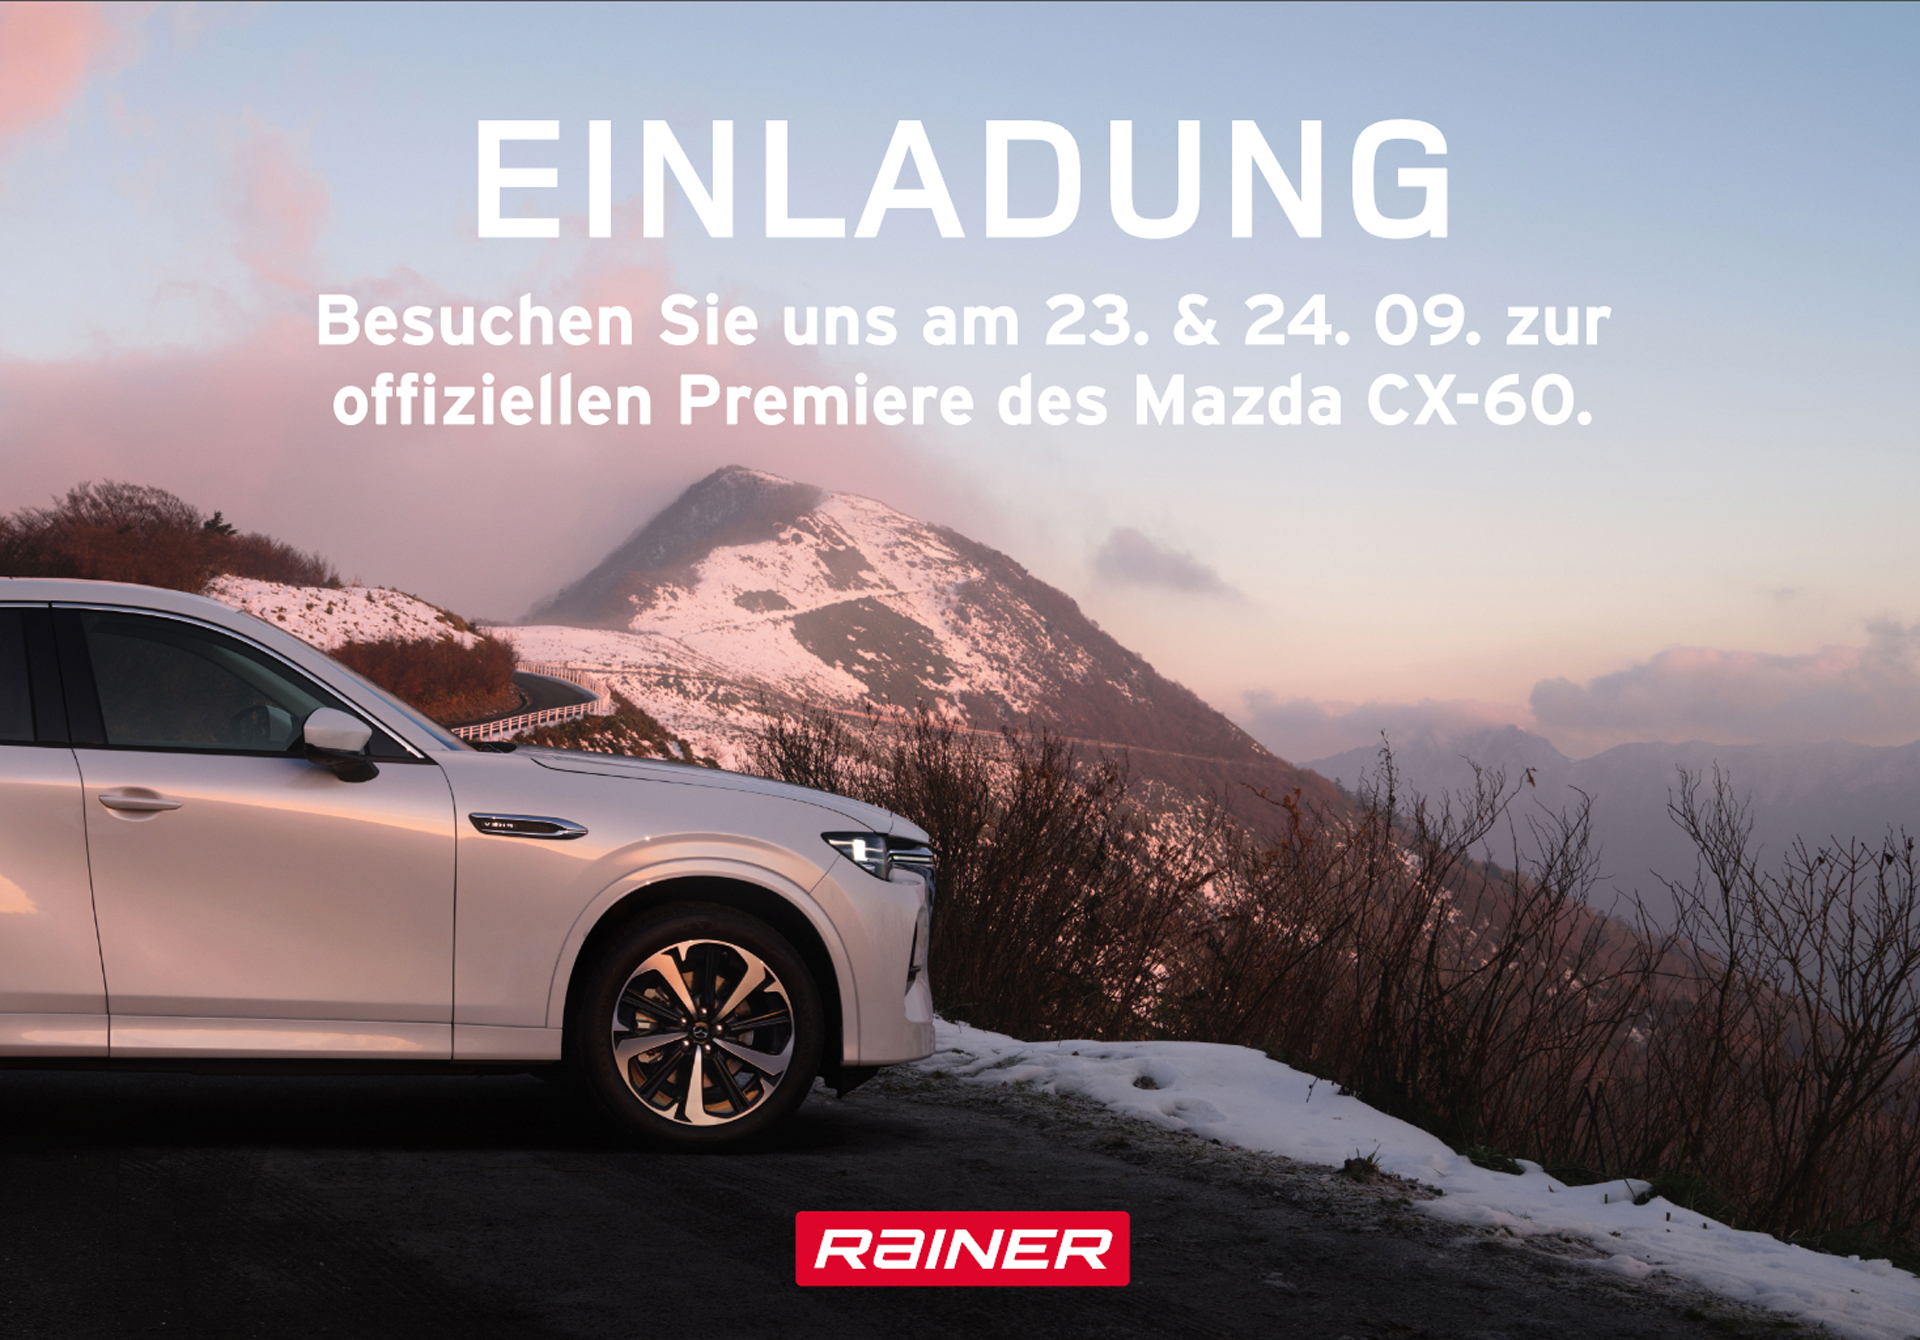 Einladung zur Mazda CX-60 Premiere im Rainer Megastore